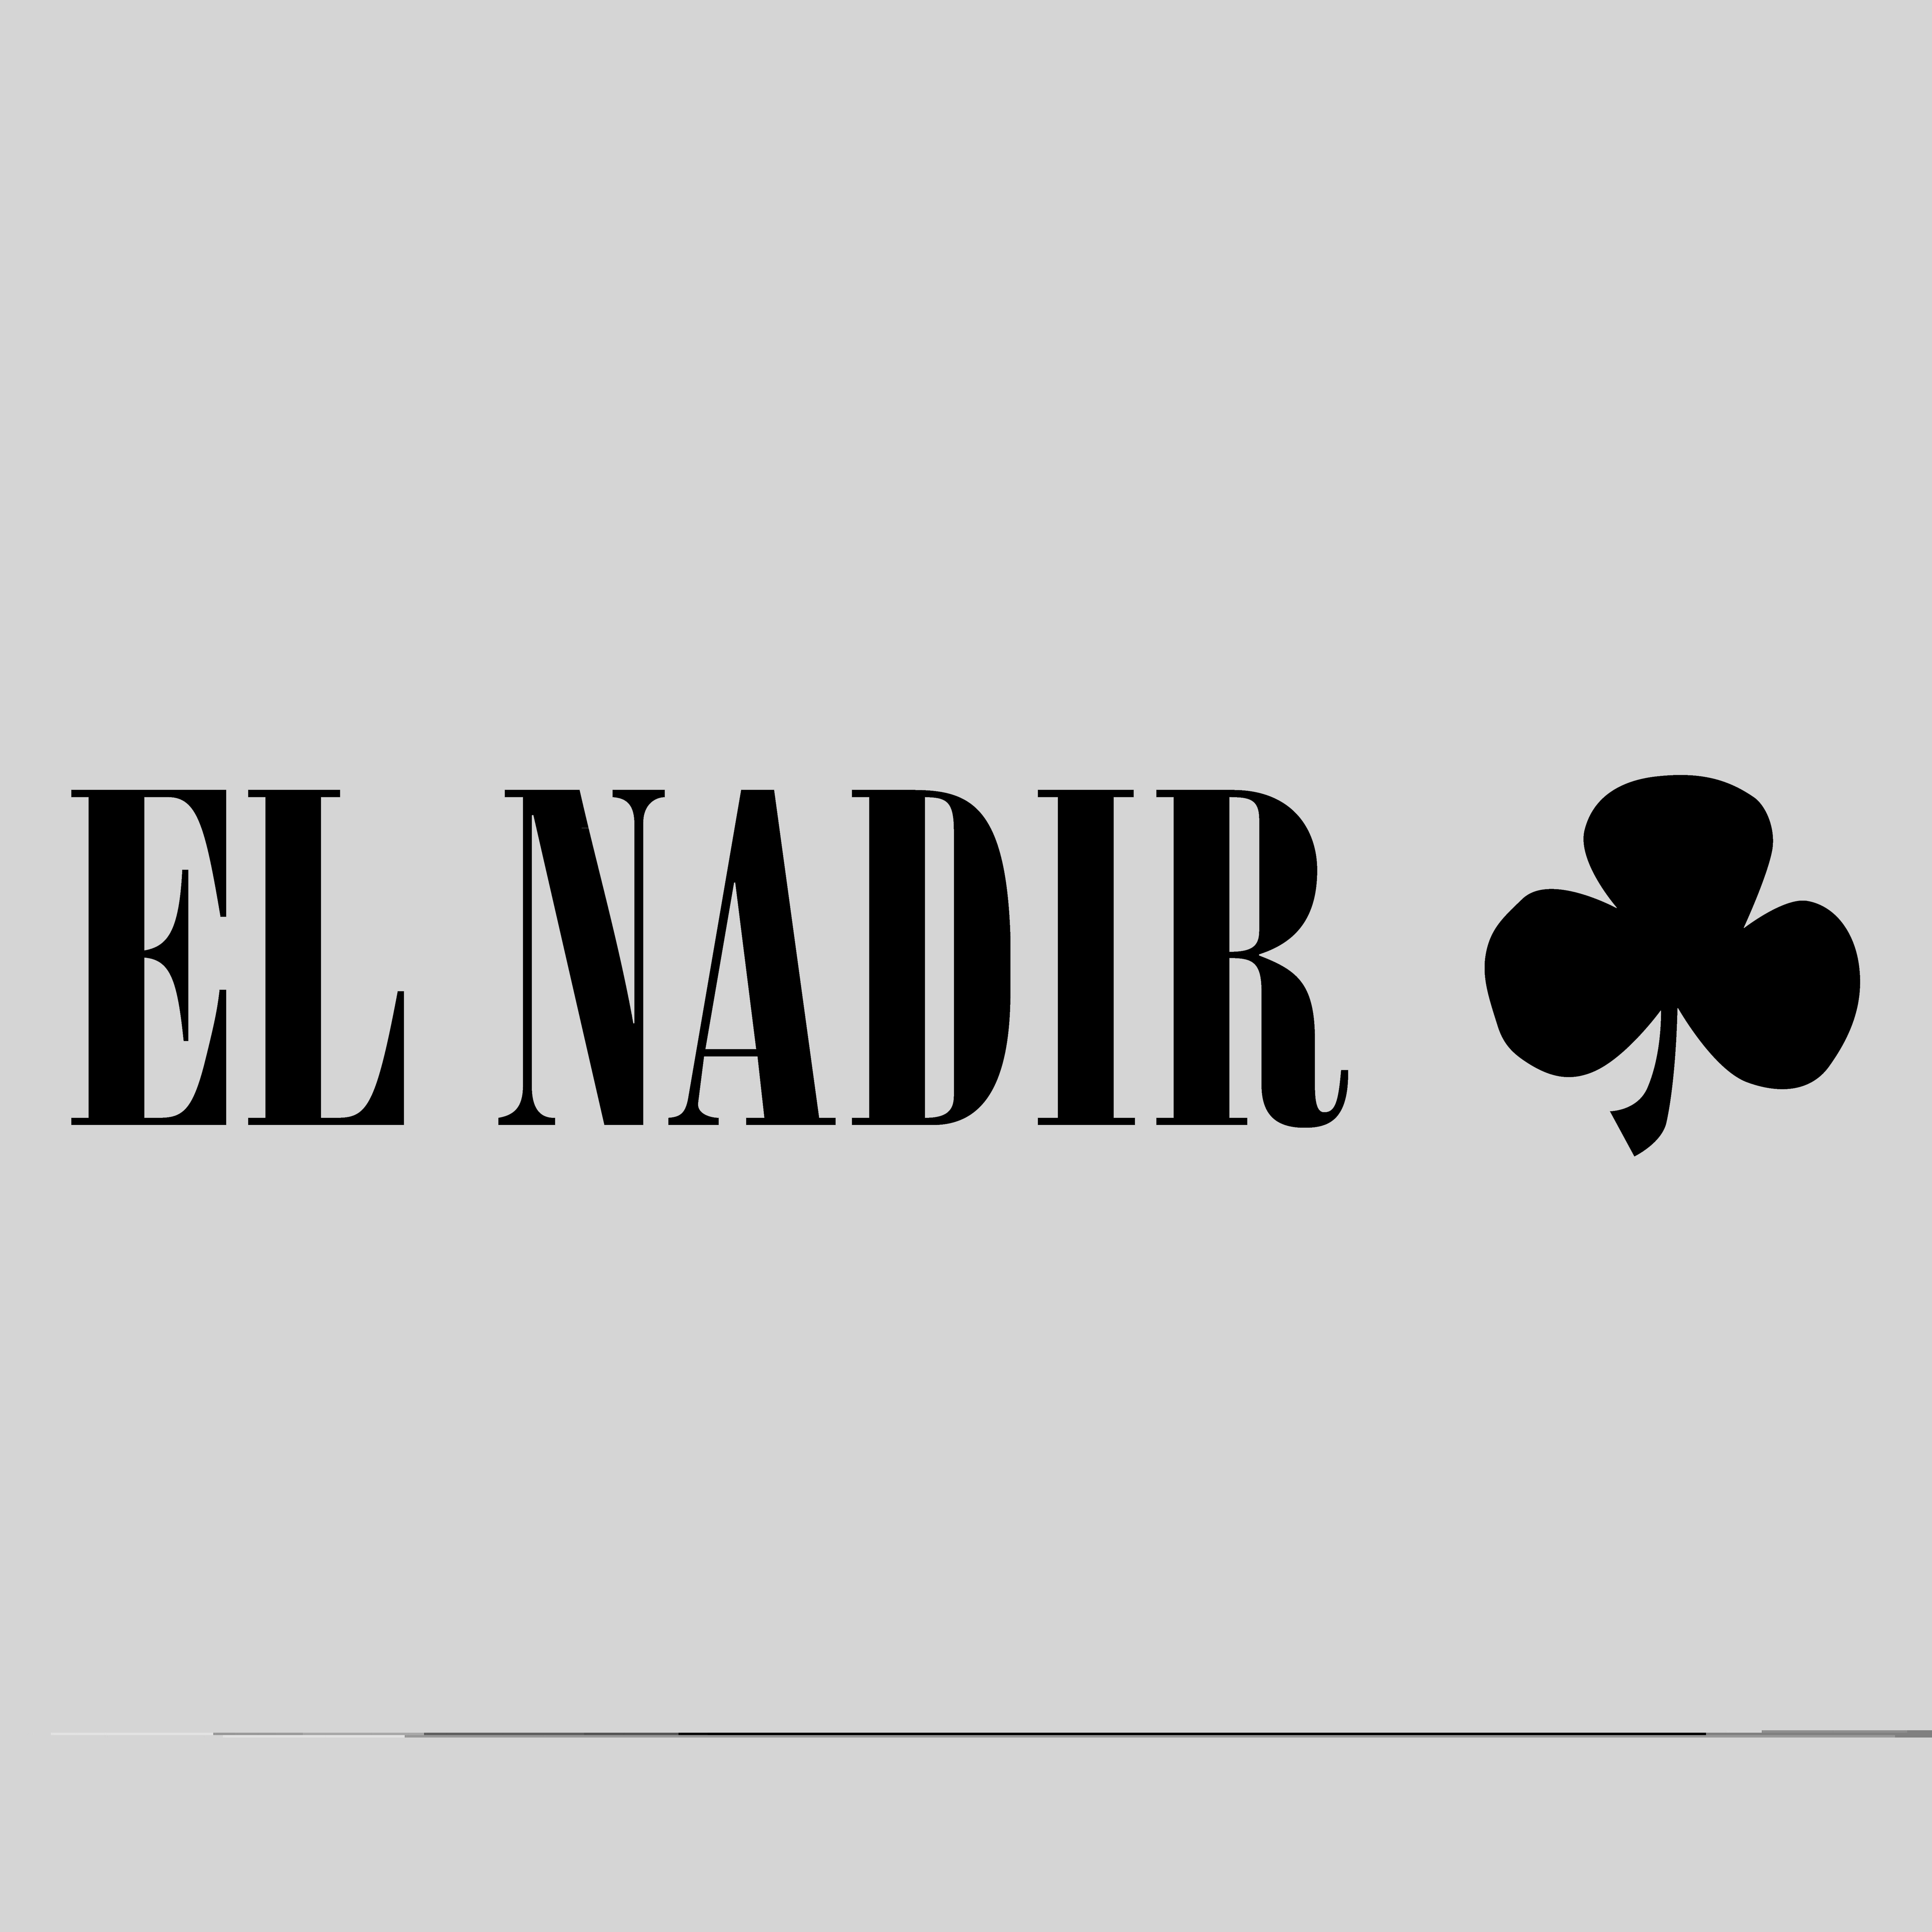 El Nadir